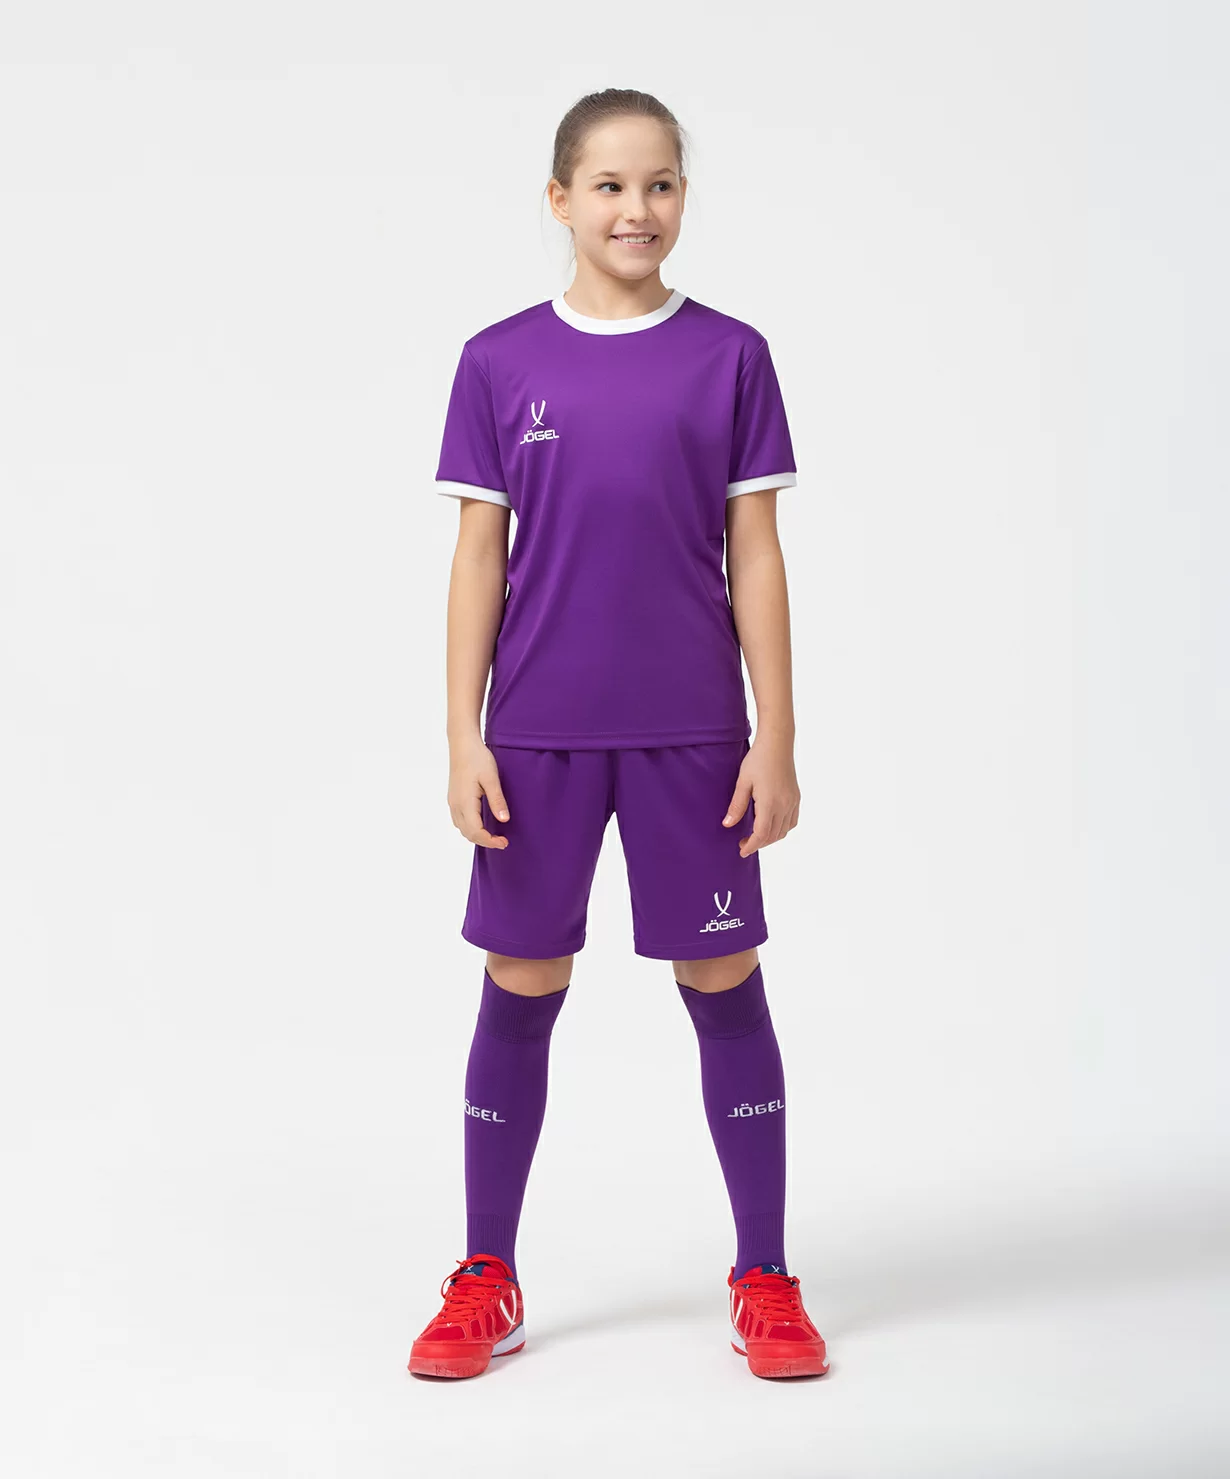 Фото Футболка футбольная CAMP Origin, фиолетовый/белый, детский Jögel со склада магазина Спортев